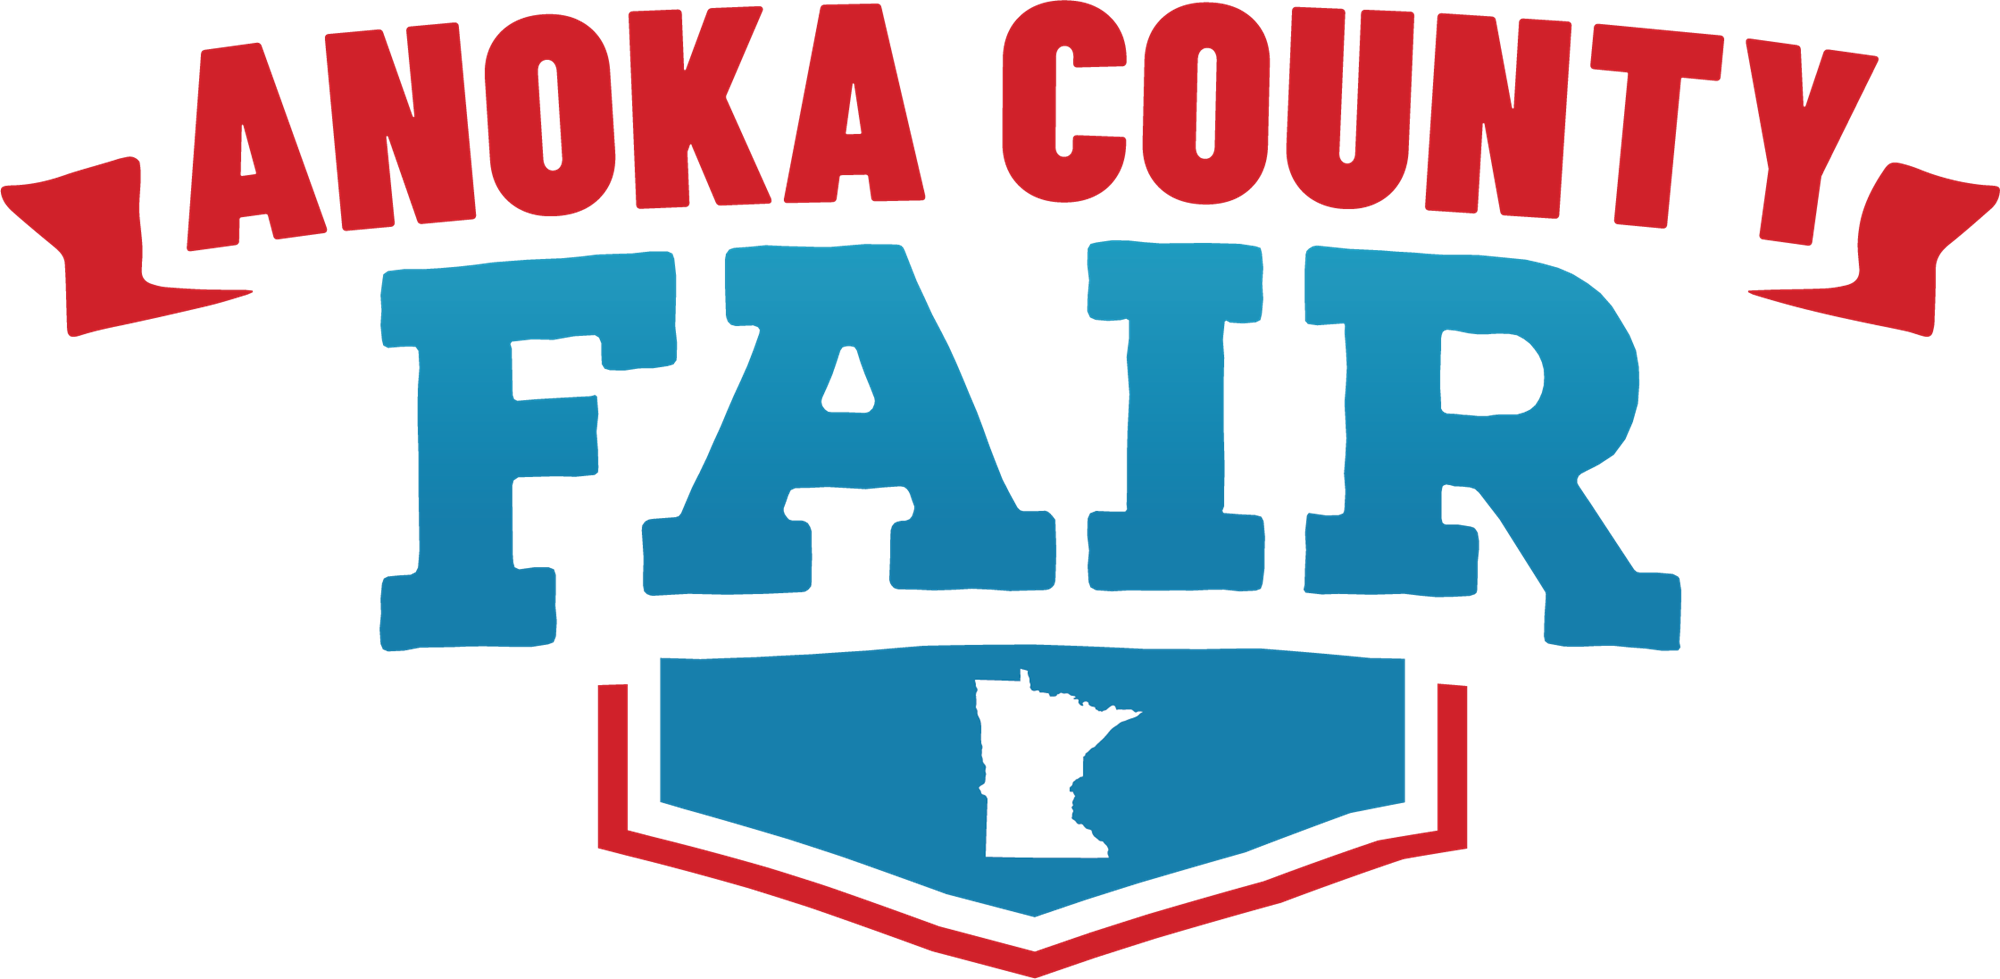 Anoka County Fair